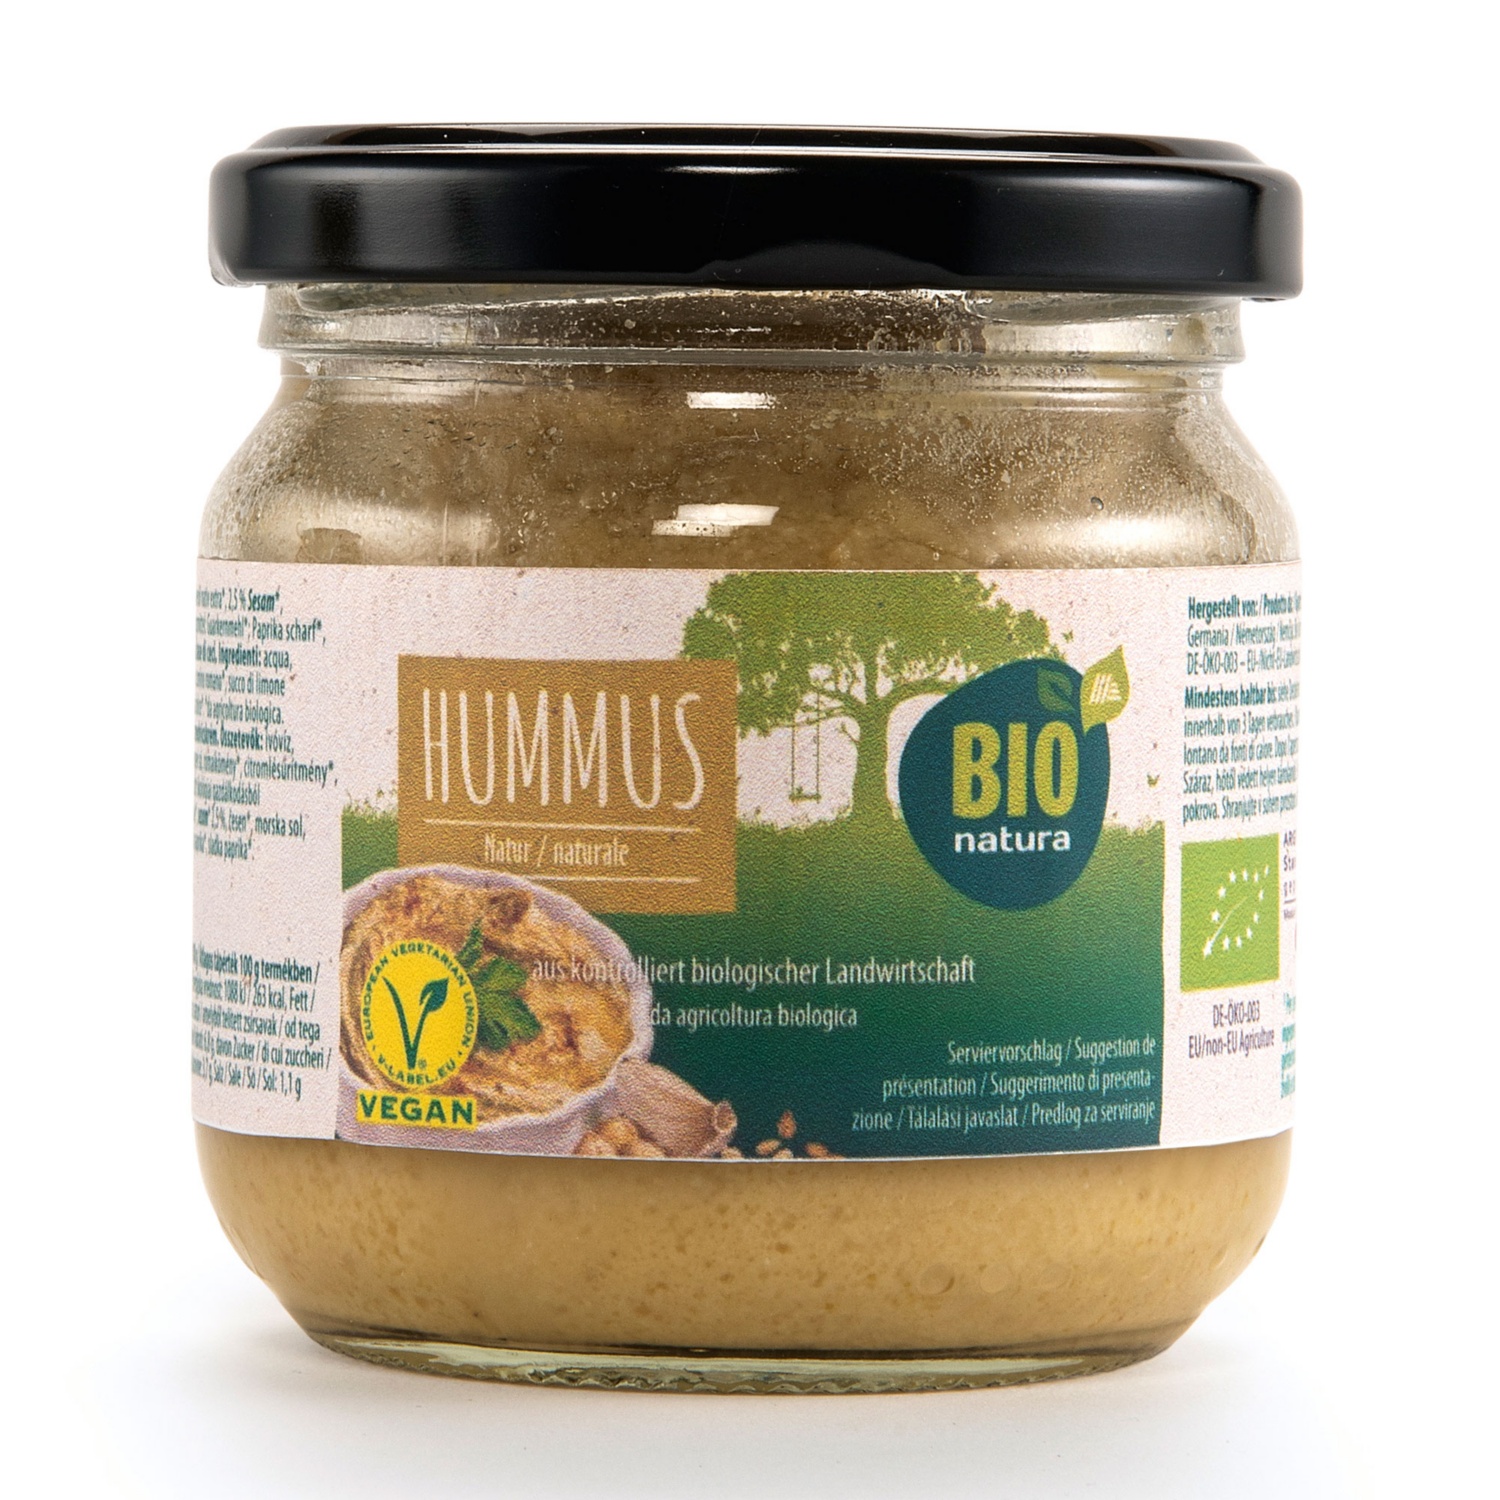 BIO NATURA Hummus classico BIO